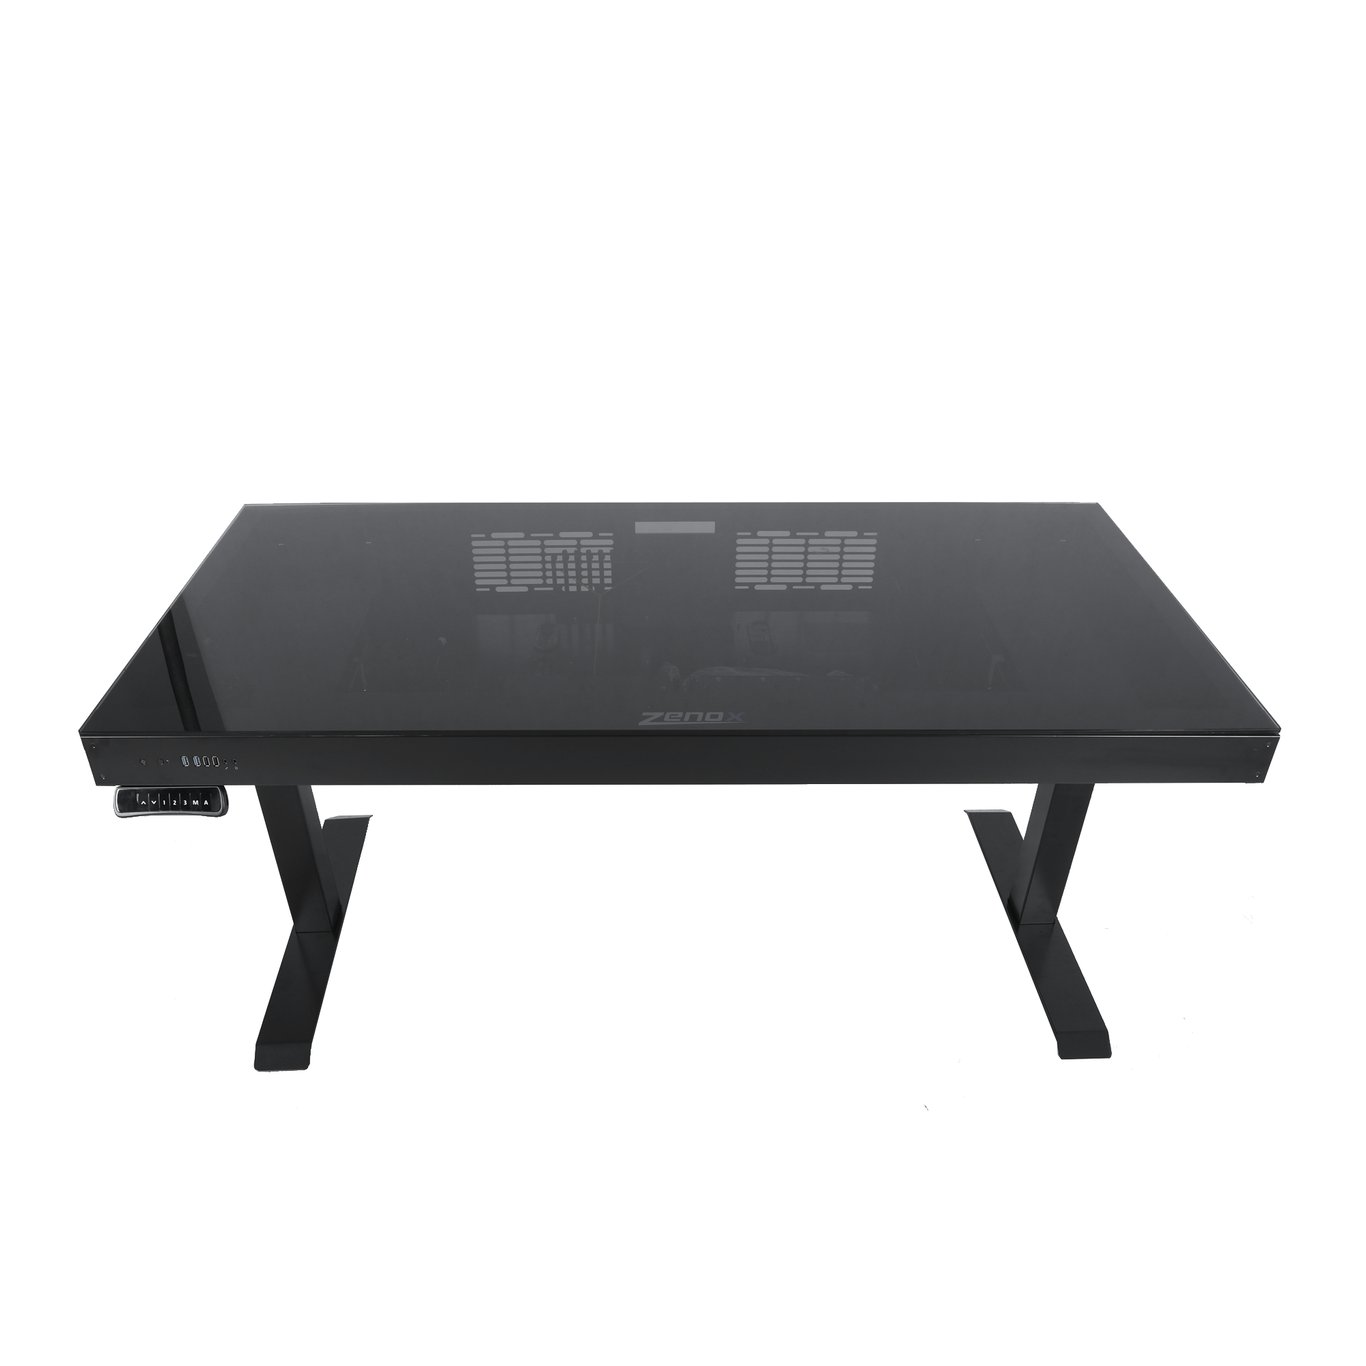 Zenox Zeus Pro Gaming Desk V2 電競枱 (可調整高度) ATX 機箱 - 1.5米 (組裝需另外報價)